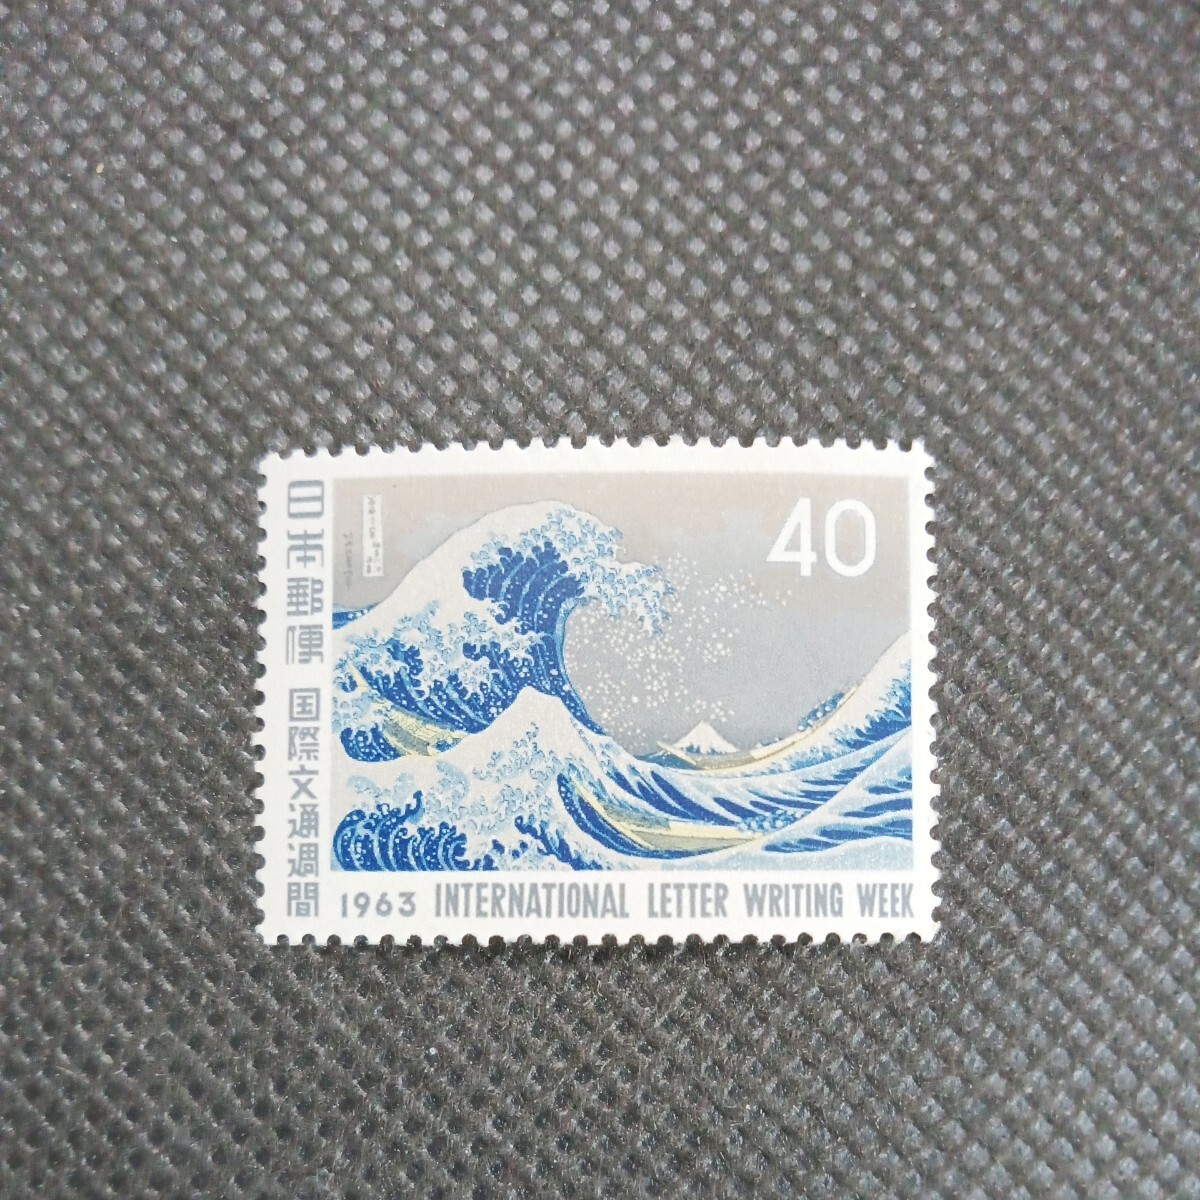 1963国際文通週間 葛飾北斎 神奈川沖浪裏 40円切手の画像1